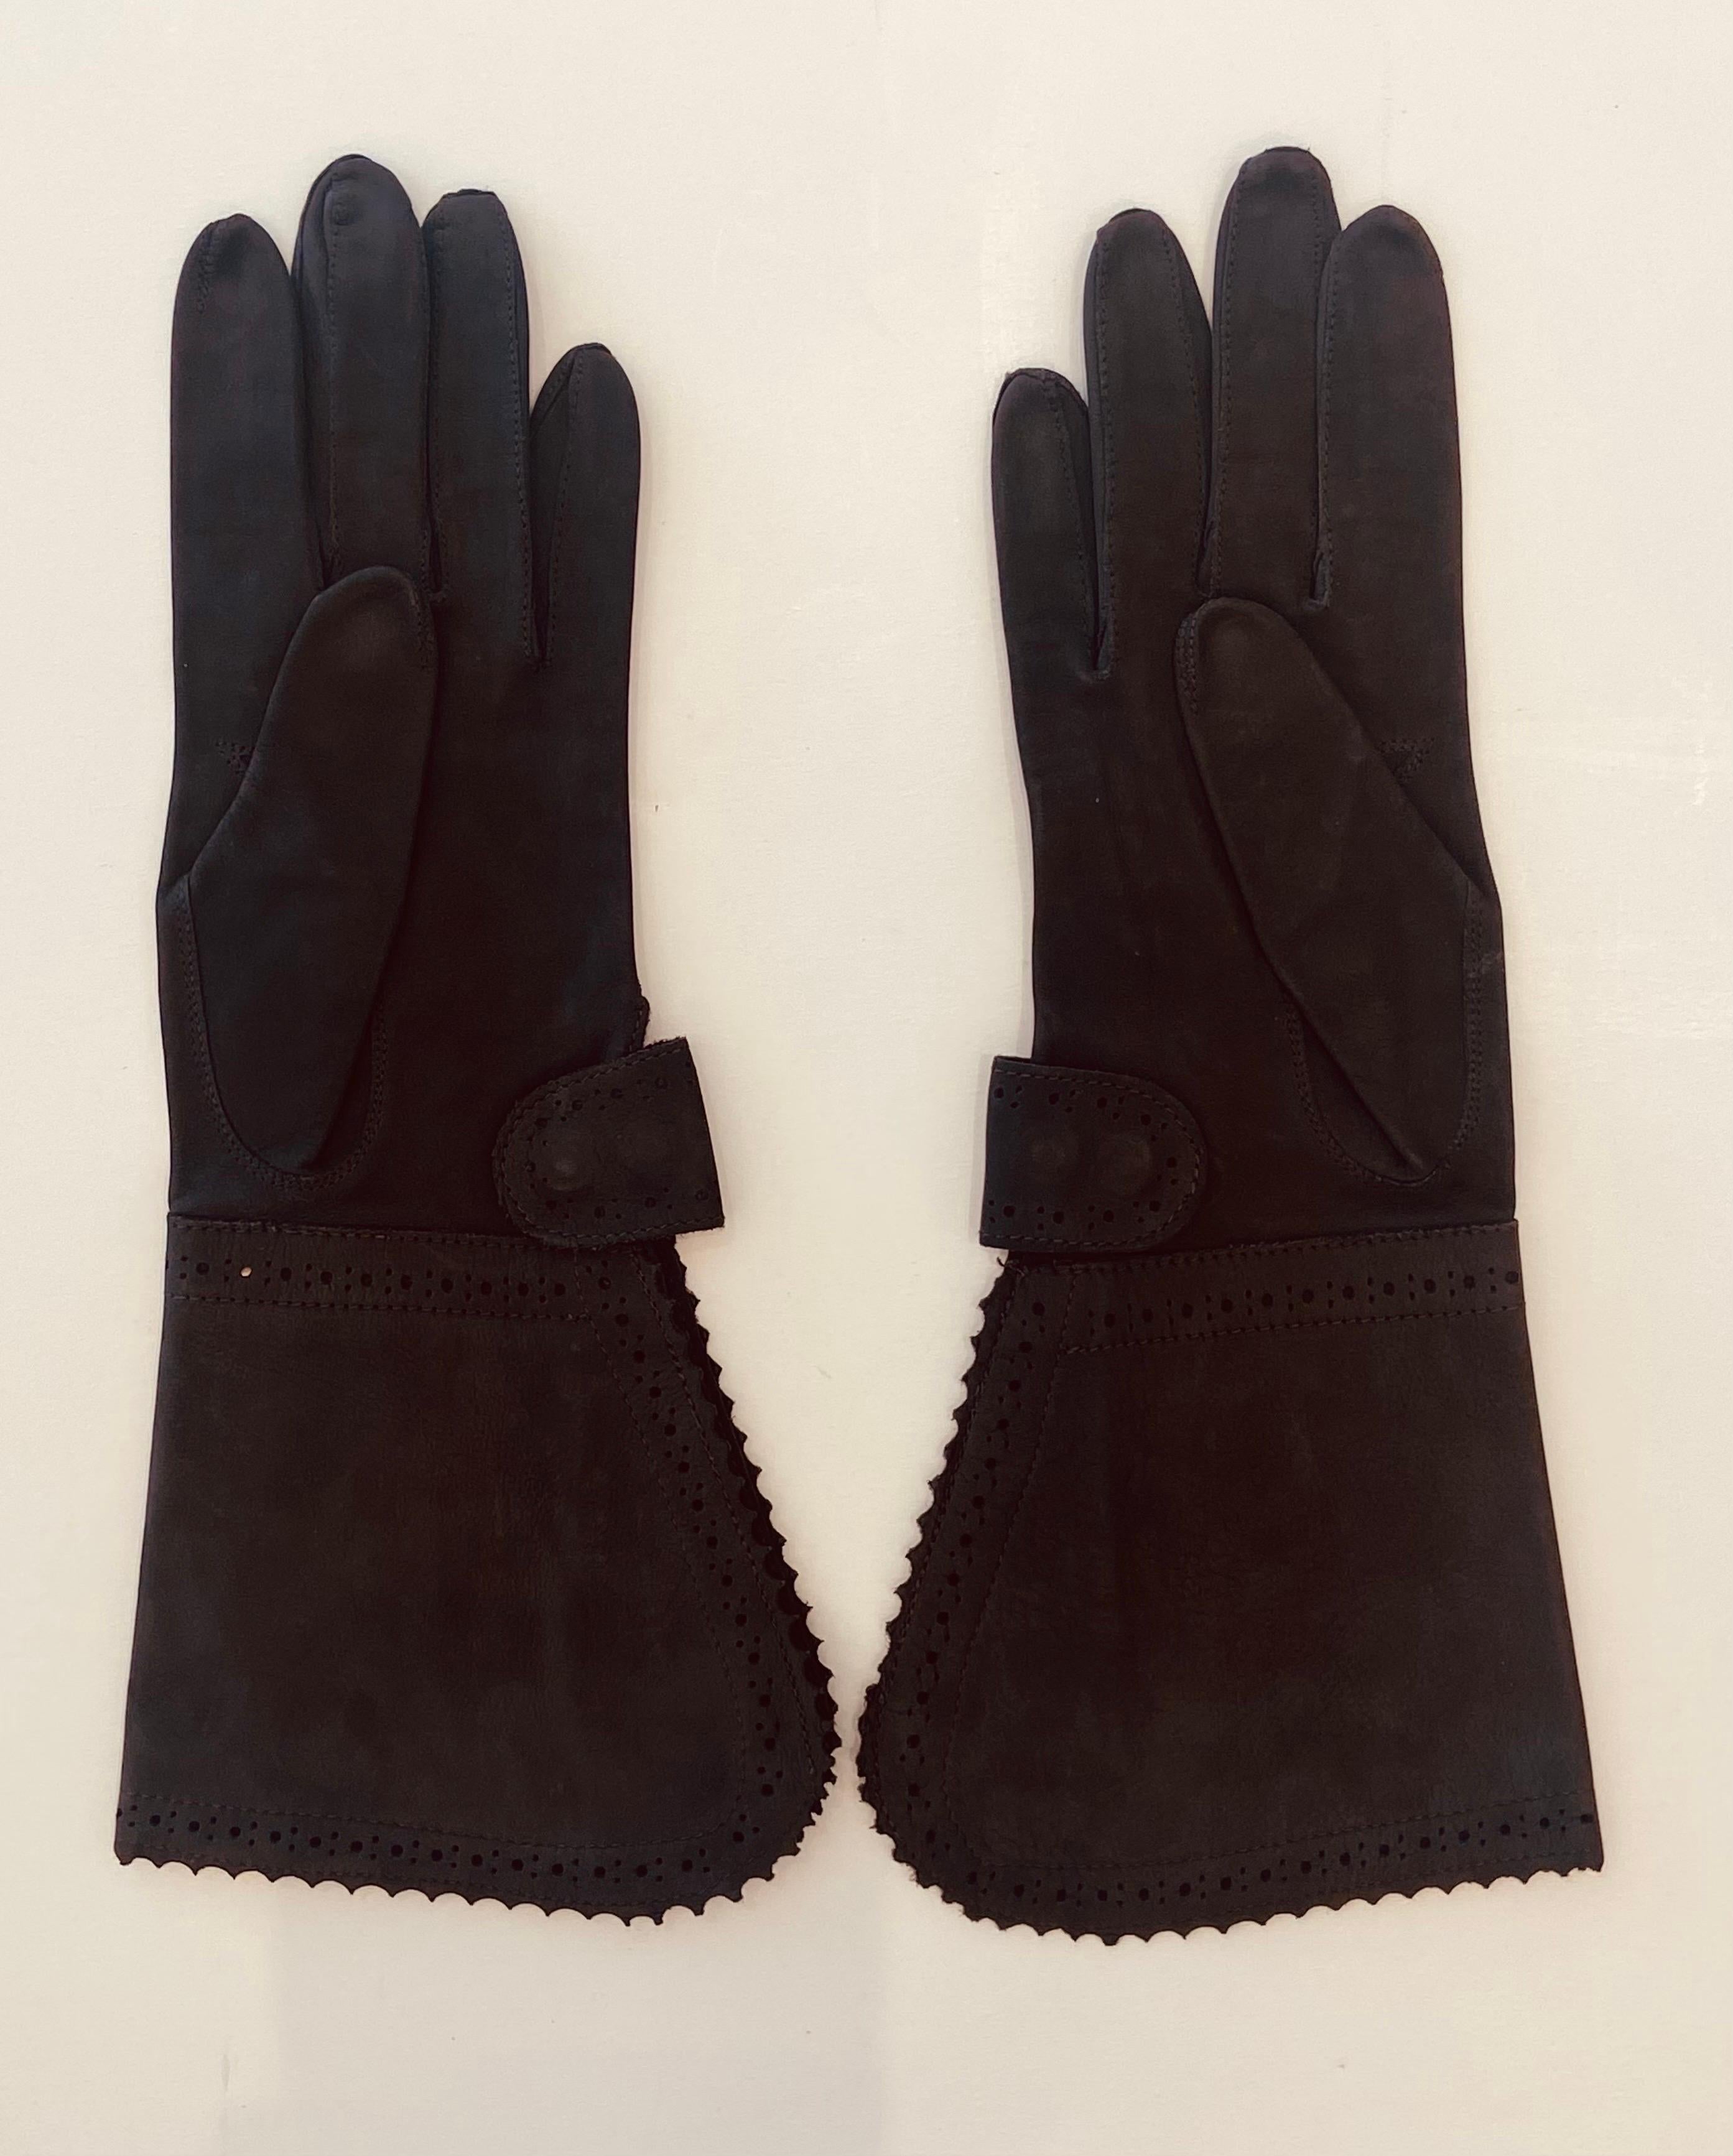 Christian Dior stahlgrauer Veau Velours-Wildlederhandschuh (weiches Kalbsleder) mit perforierter Stulpe und Druckknopf am Handgelenk, der mehr oder weniger Platz bietet, aus den 1980er Jahren, mit Innenzwickel. Diese Handschuhe sehen kaum getragen